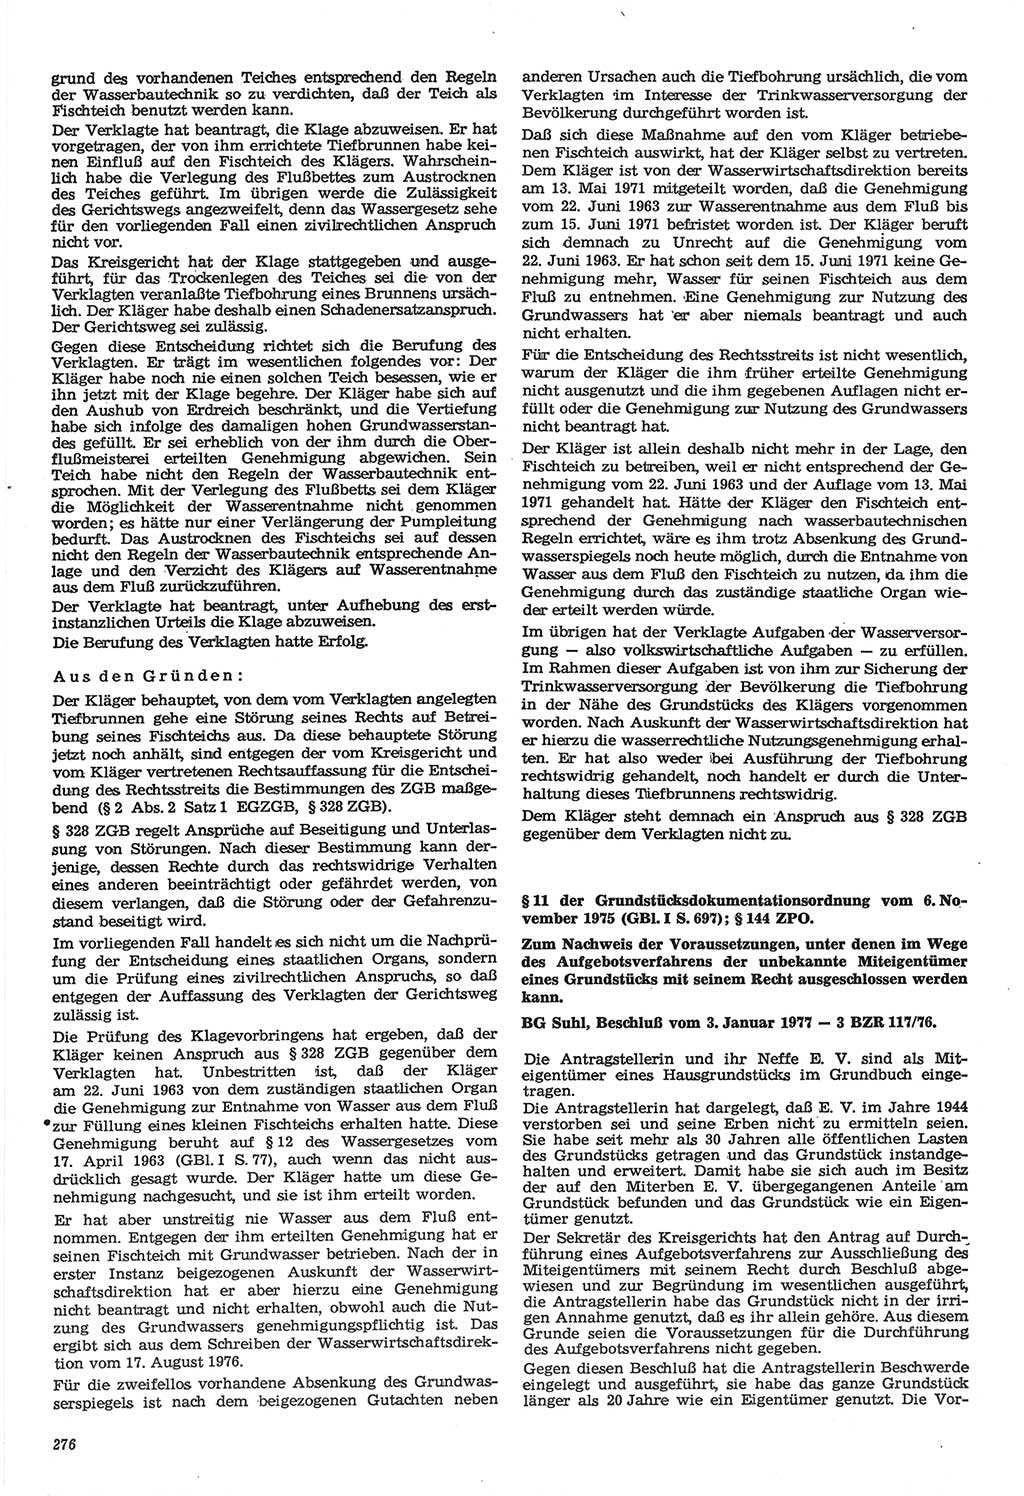 Neue Justiz (NJ), Zeitschrift für Recht und Rechtswissenschaft-Zeitschrift, sozialistisches Recht und Gesetzlichkeit, 31. Jahrgang 1977, Seite 276 (NJ DDR 1977, S. 276)